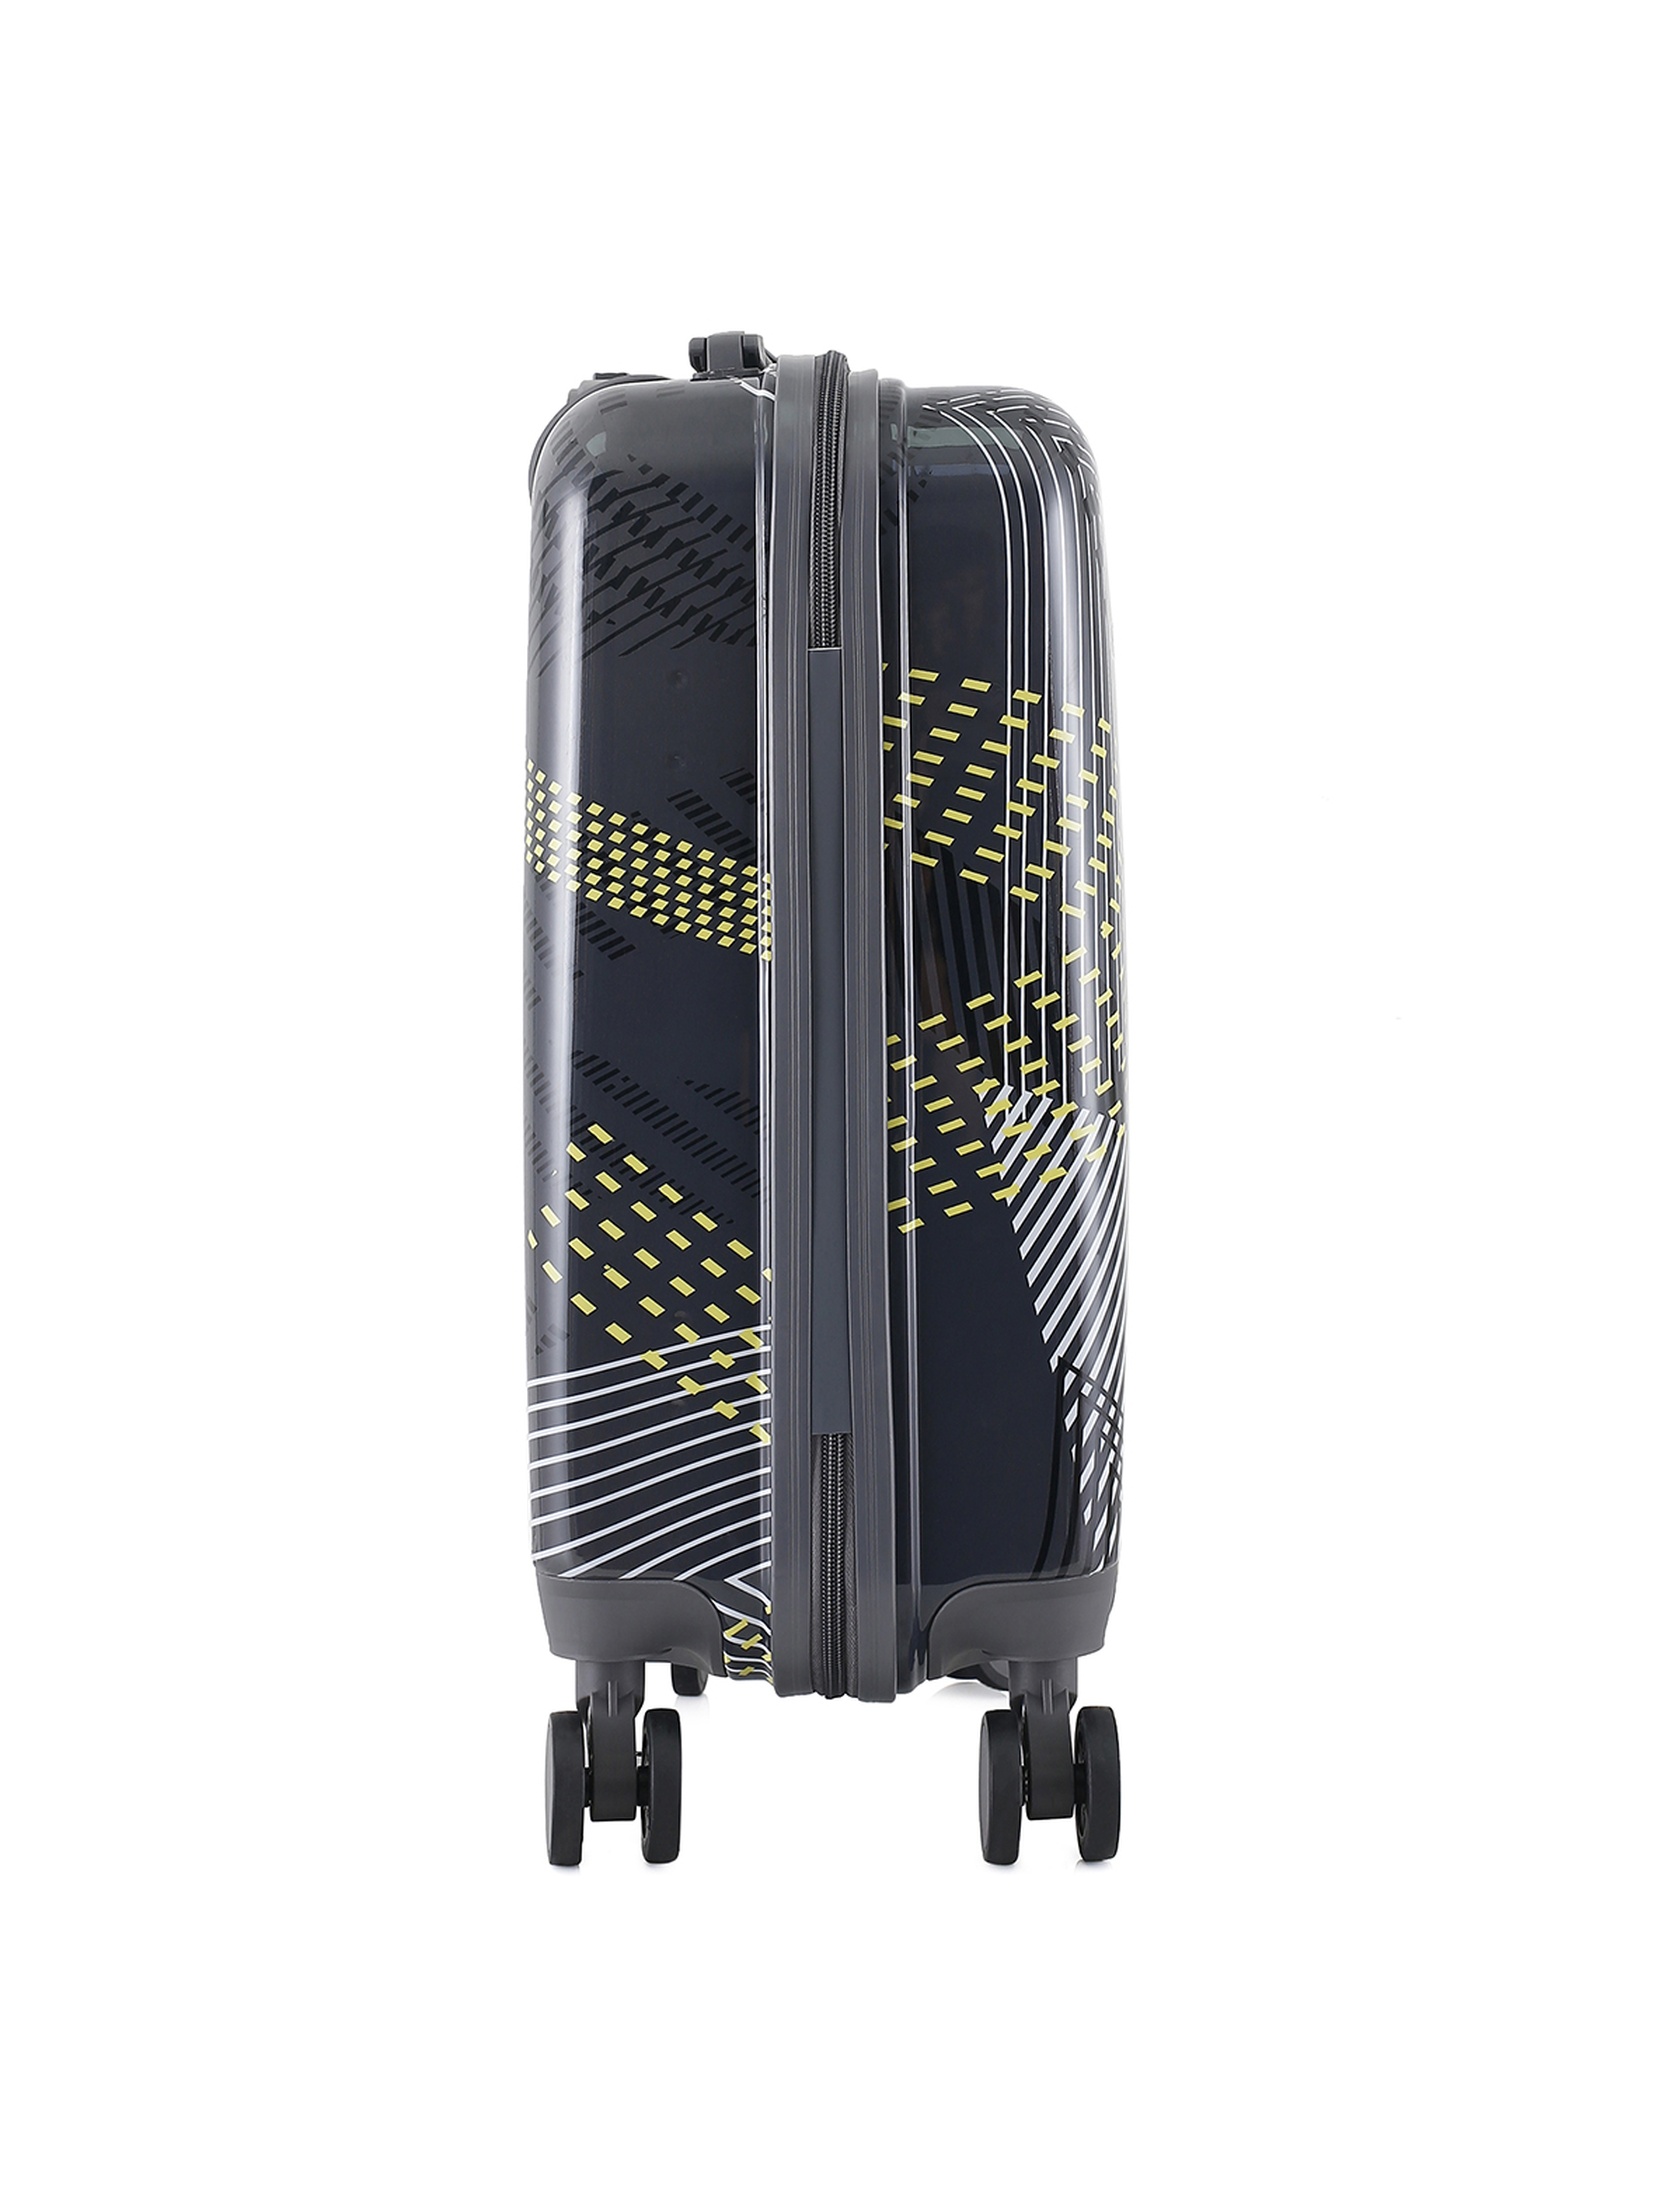 Mała twarda walizka 44 L - 36,5x24x50cm PC+ABS